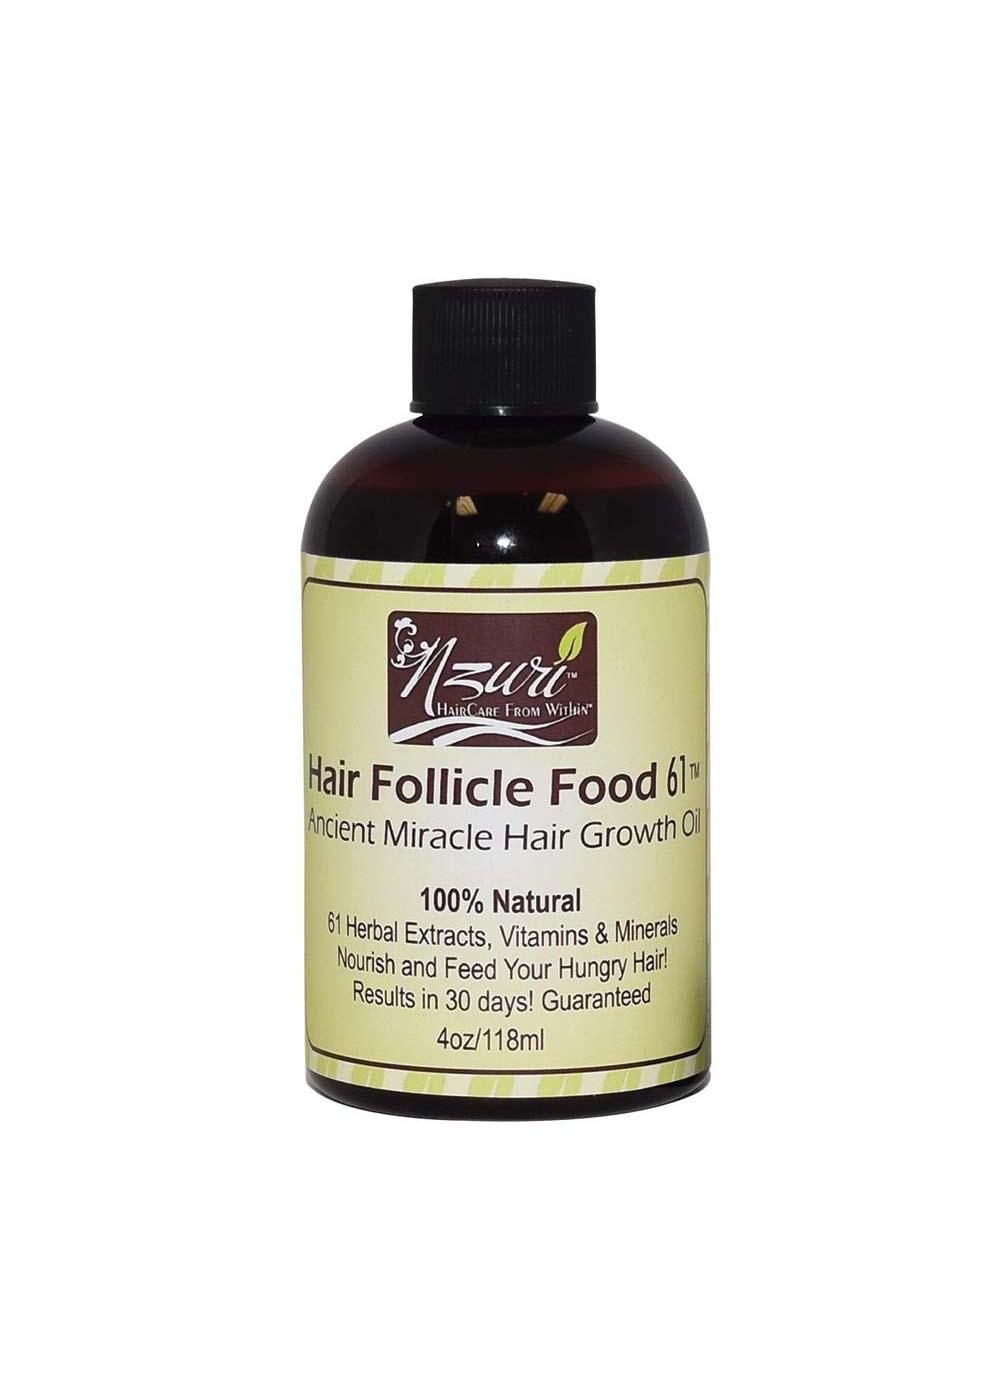 Nzuri Hair Follicle Food 61; image 1 of 2